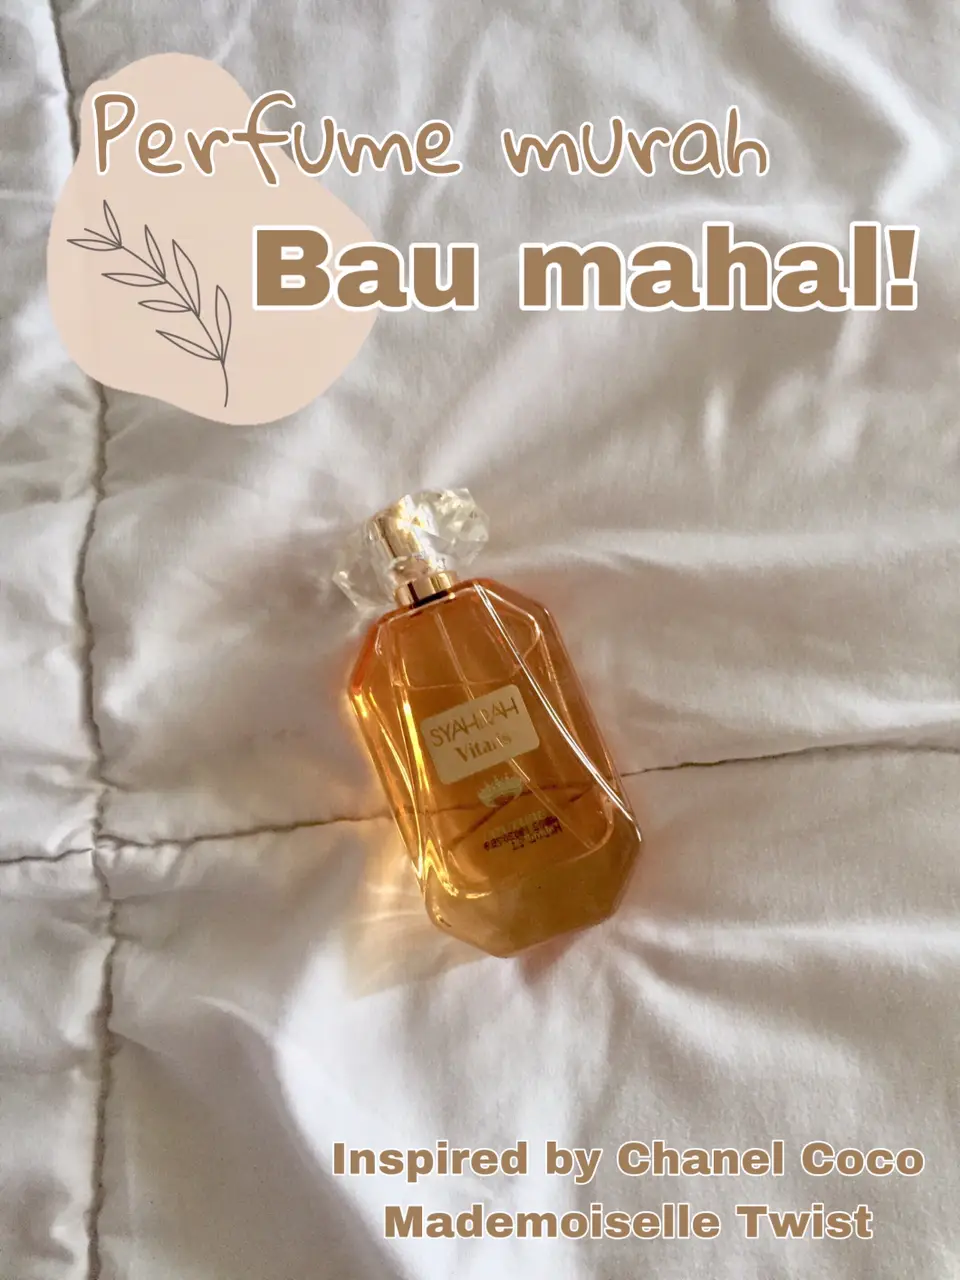 Perfume Murah, Bau Mahal — must buy!!😍